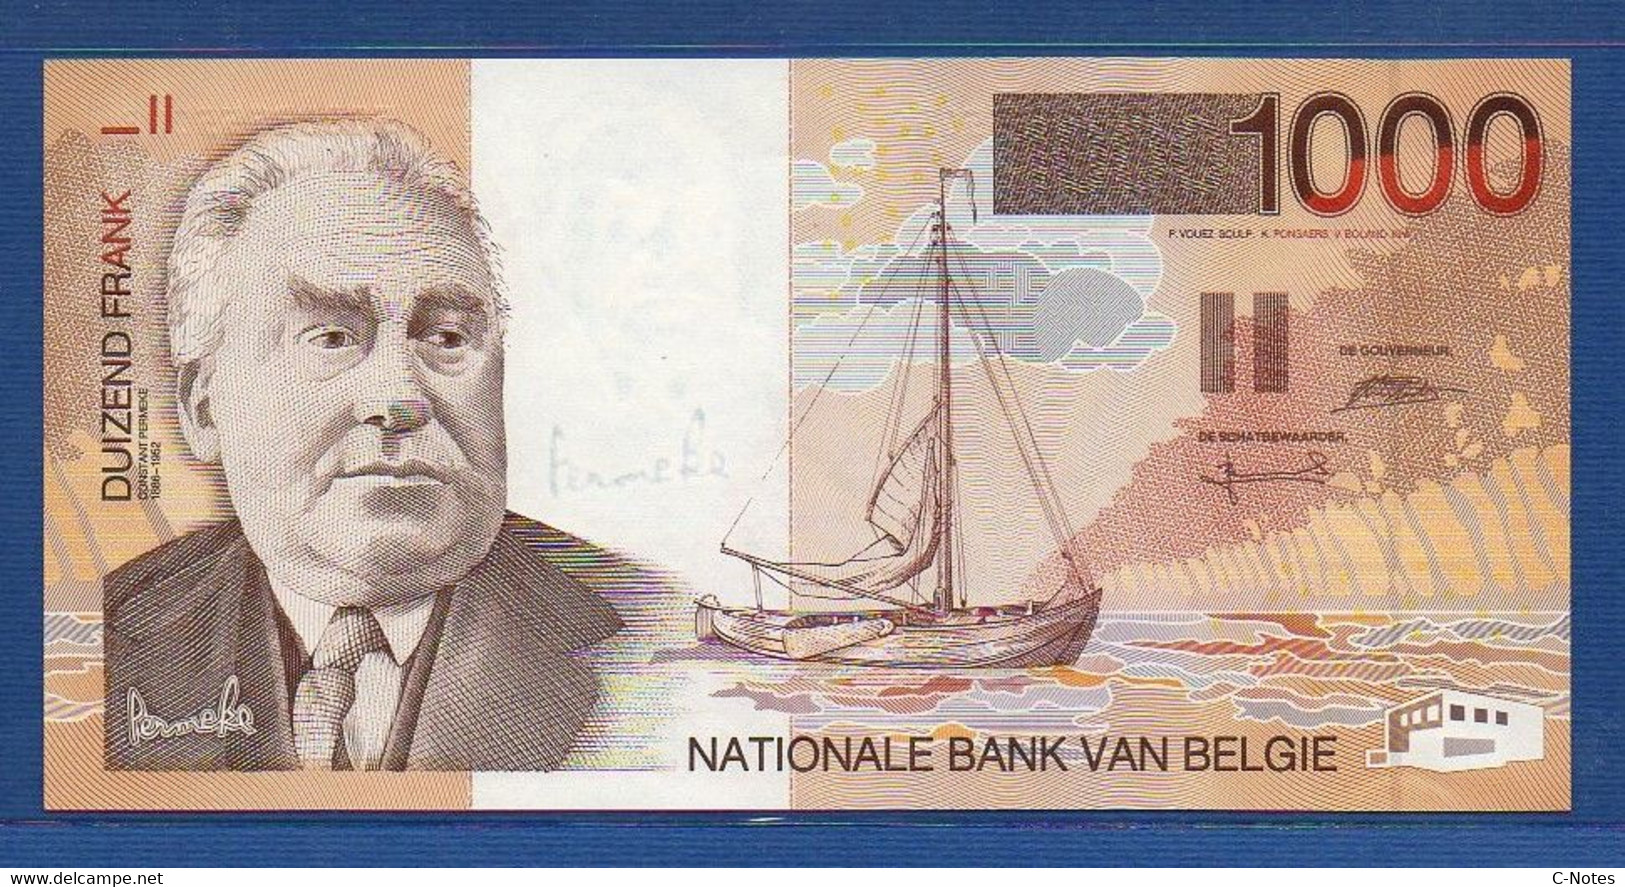 BELGIUM - P.150 - 1000 Francs ND (1997) UNC, Serie 50802655068 - 1000 Francs